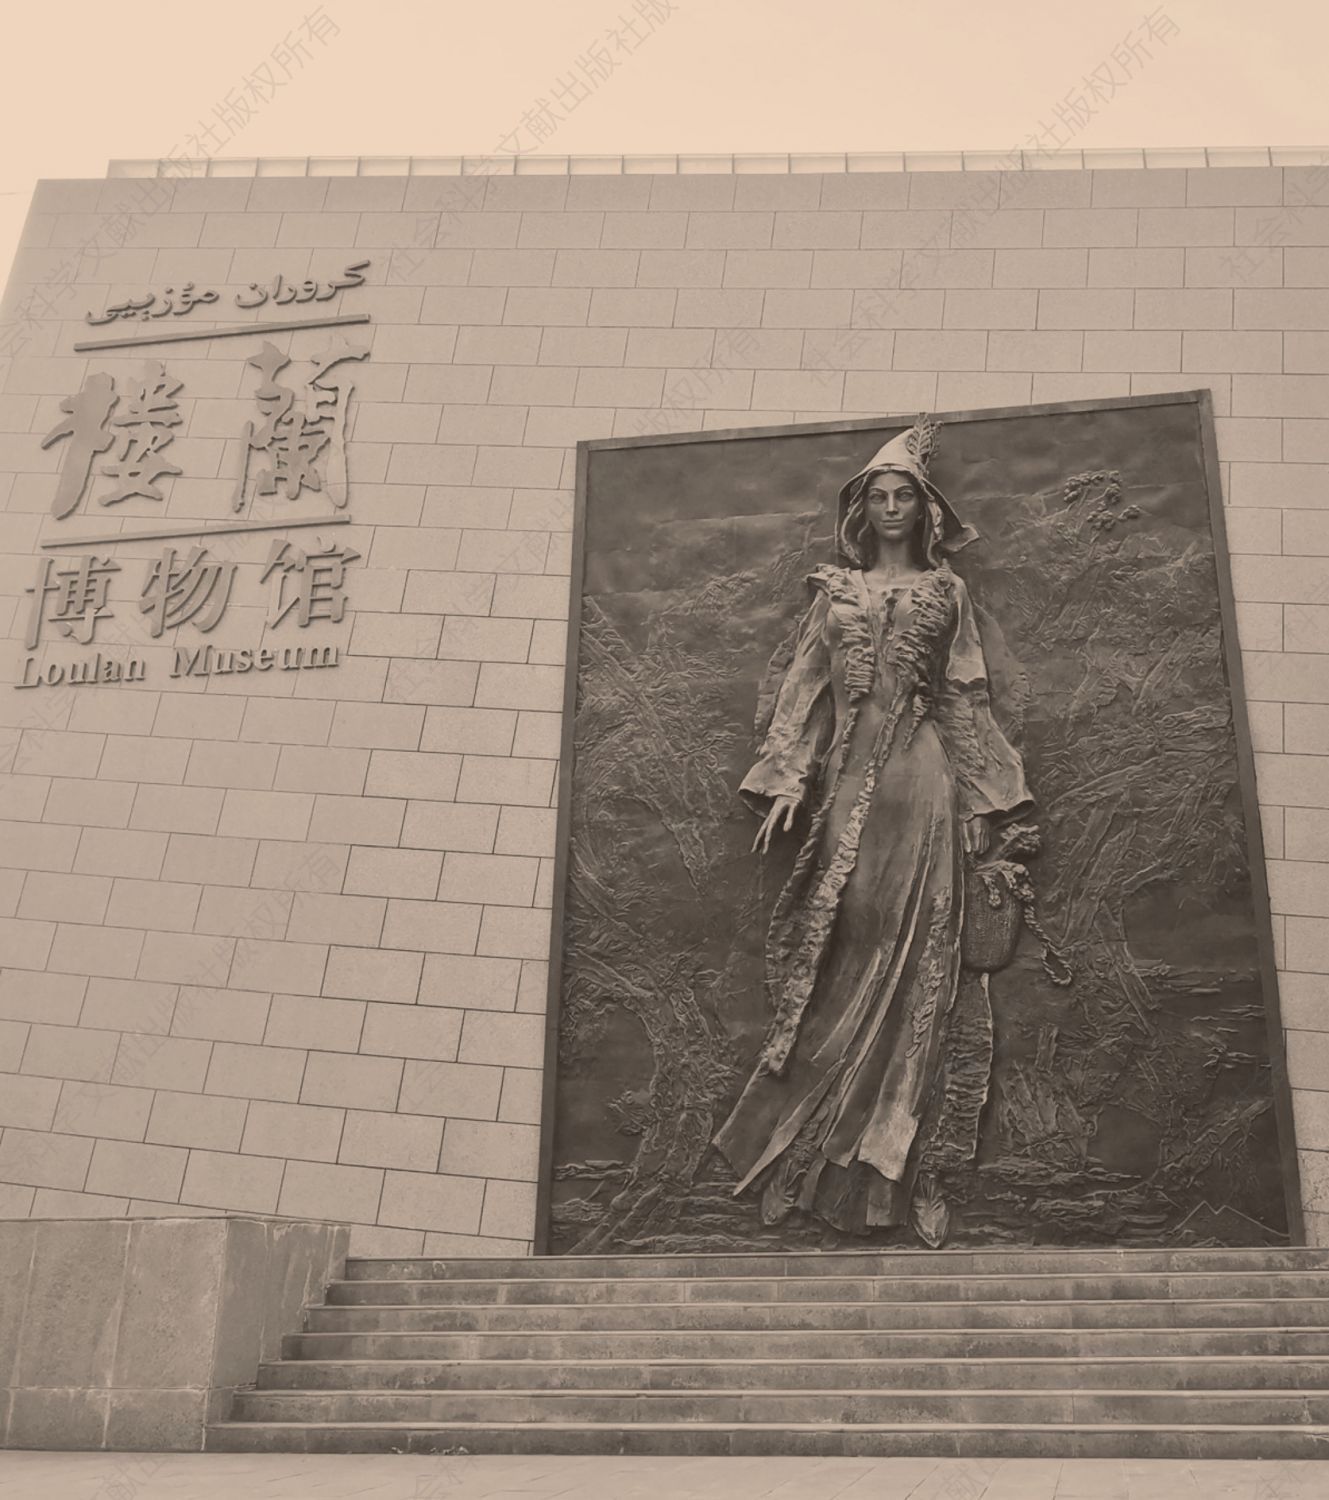 2018年楼兰博物馆门前的浮雕